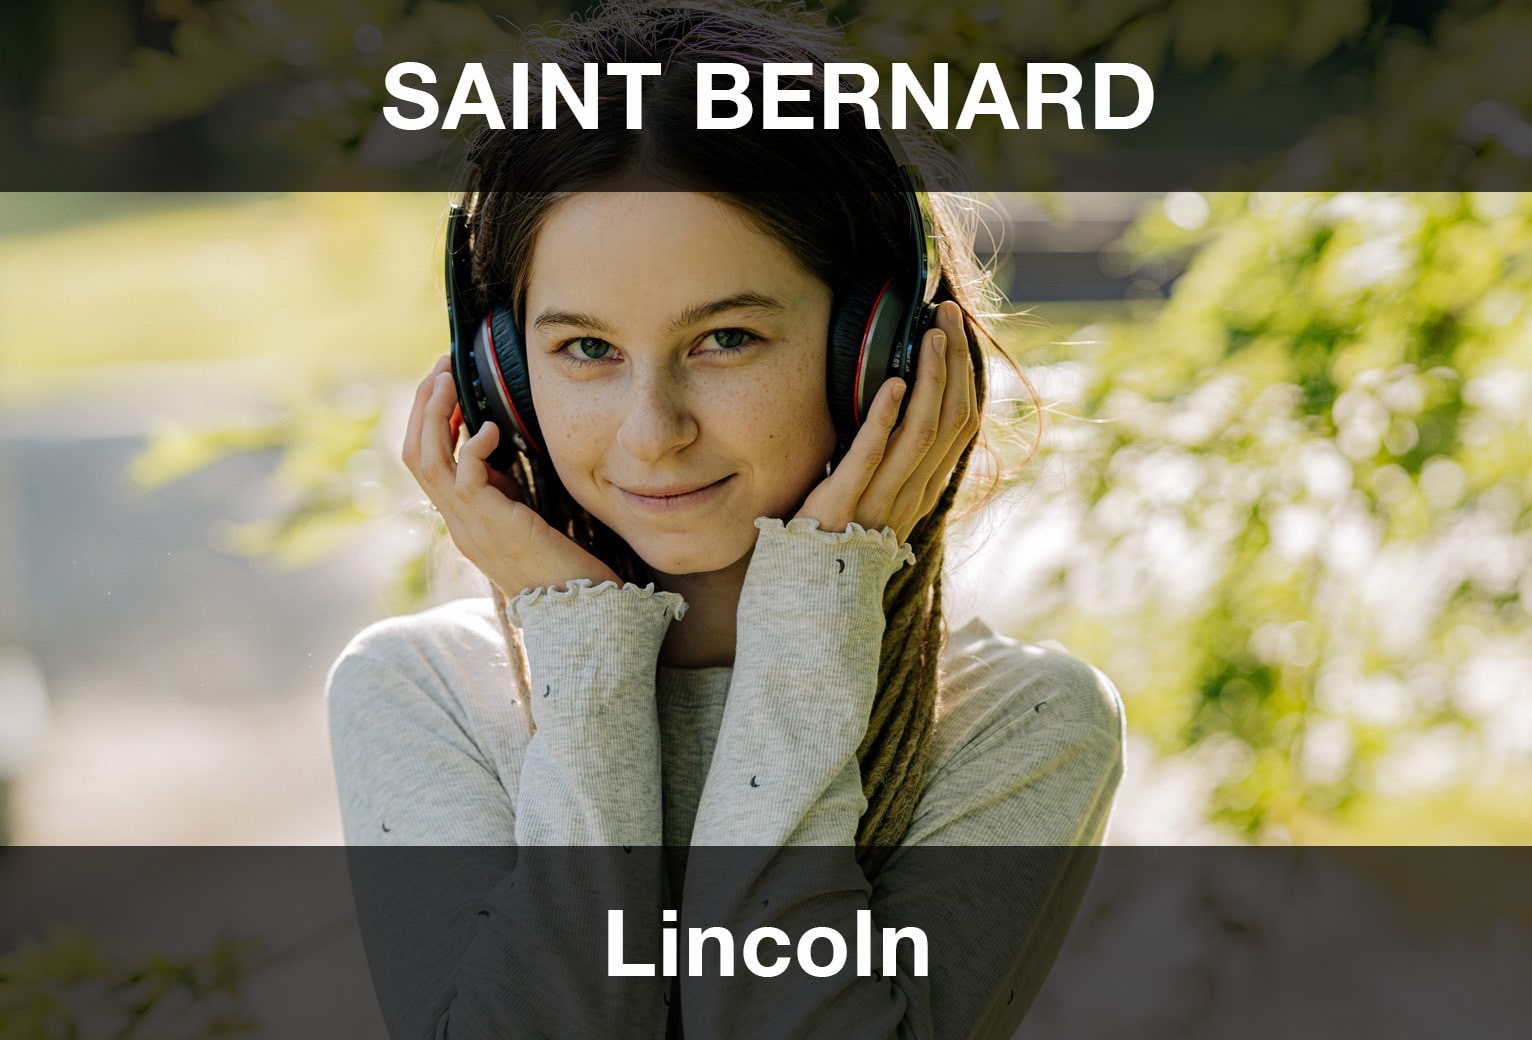 Lincoln - Saint Bernard Şarkı Sözleri Türkçe Çeviri